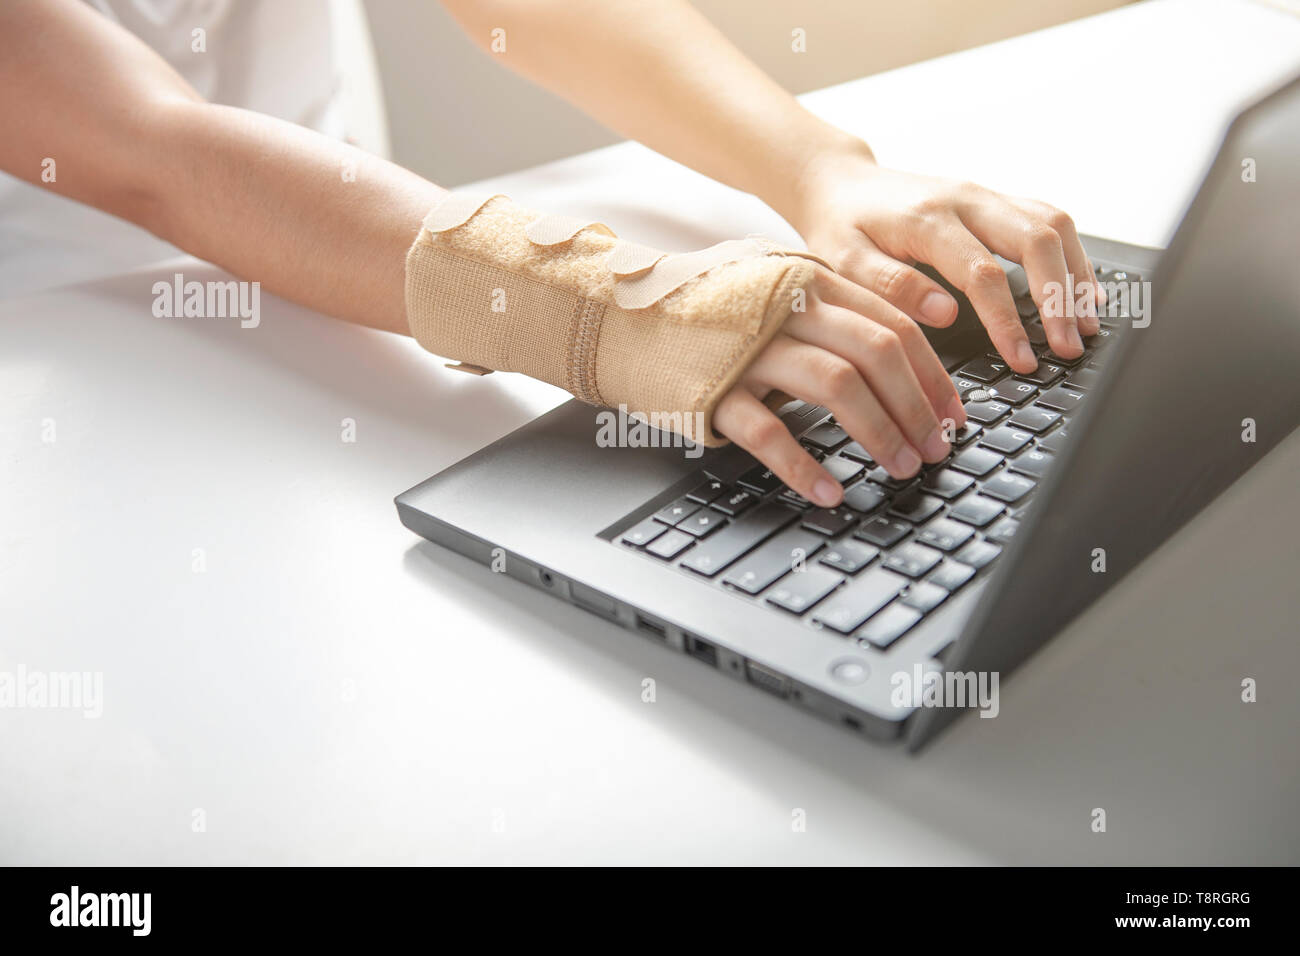 Handgelenk schmerzen vom verwenden Computer, Büro Syndrom hand Schmerzen  oder Verletzungen, Frau verwenden elastische Bandage zu behandeln  Stockfotografie - Alamy